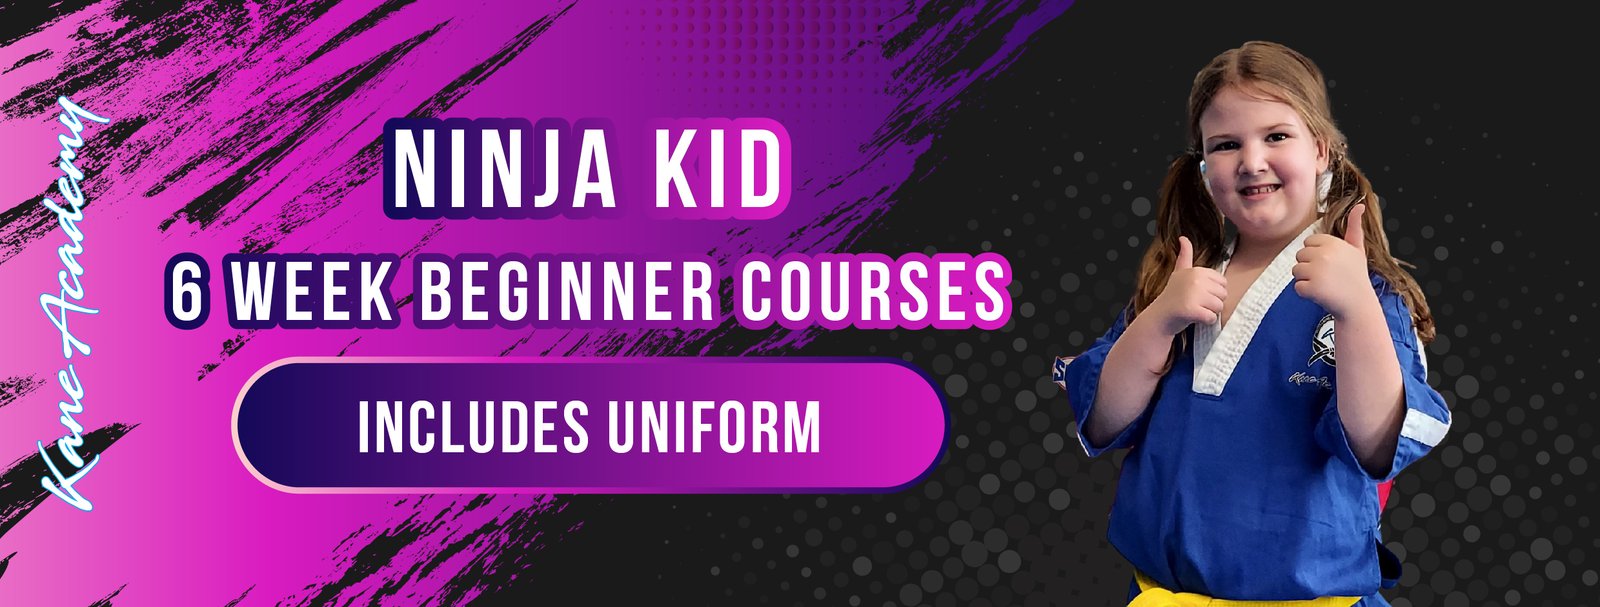 Ninja kids beginner course 